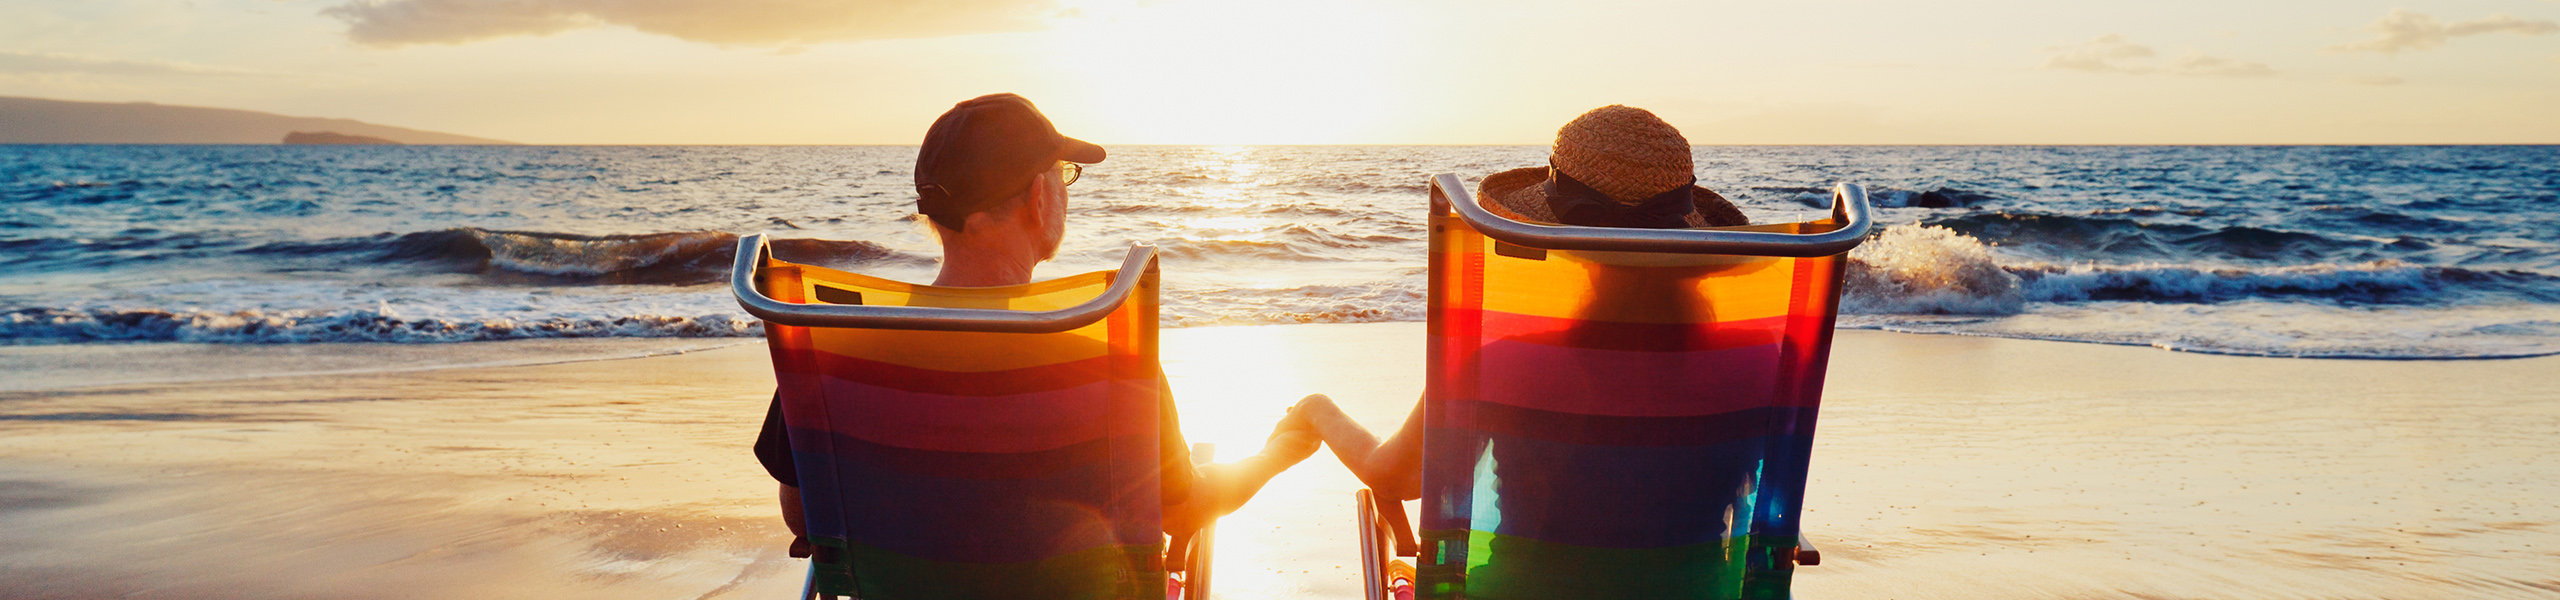 Ein Paar am Strand in Liegestühlen die den Sonnenuntergang anschauen